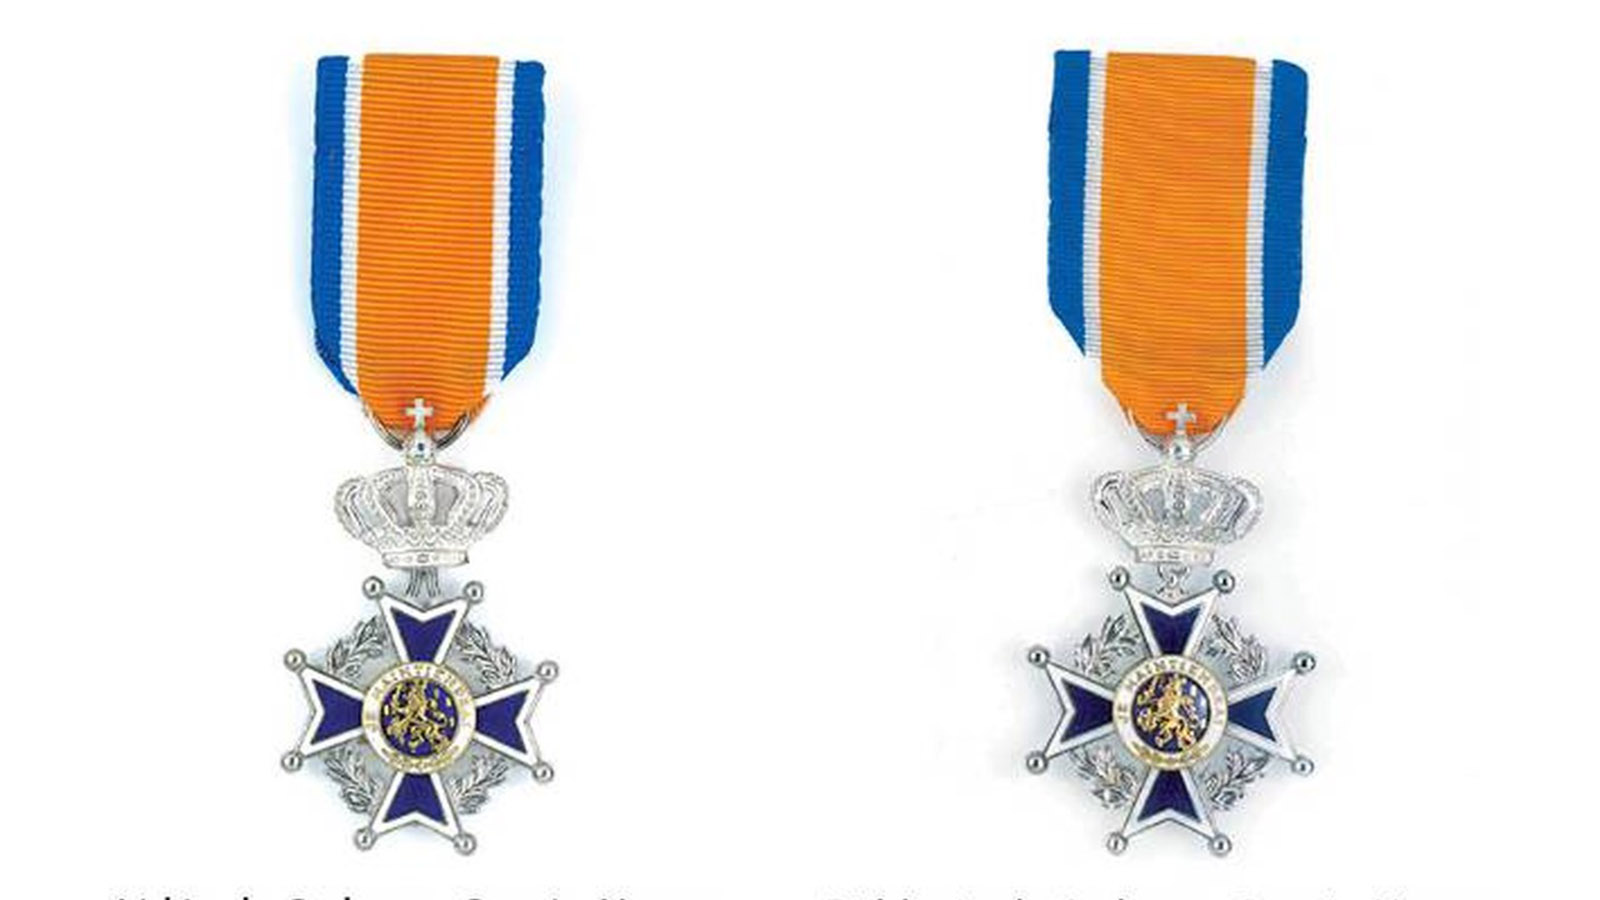 Koninklijke onderscheiding voor de heer H.J. van Putten